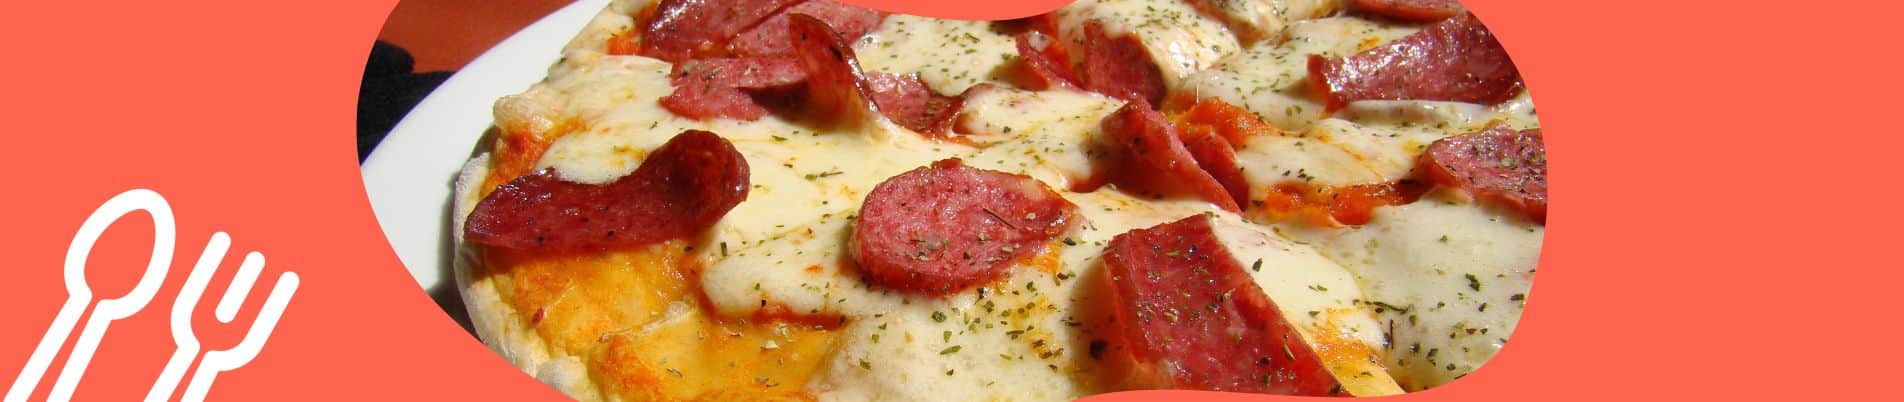 Rodízio de Pizza em Brasília: Os 10 melhores lugares